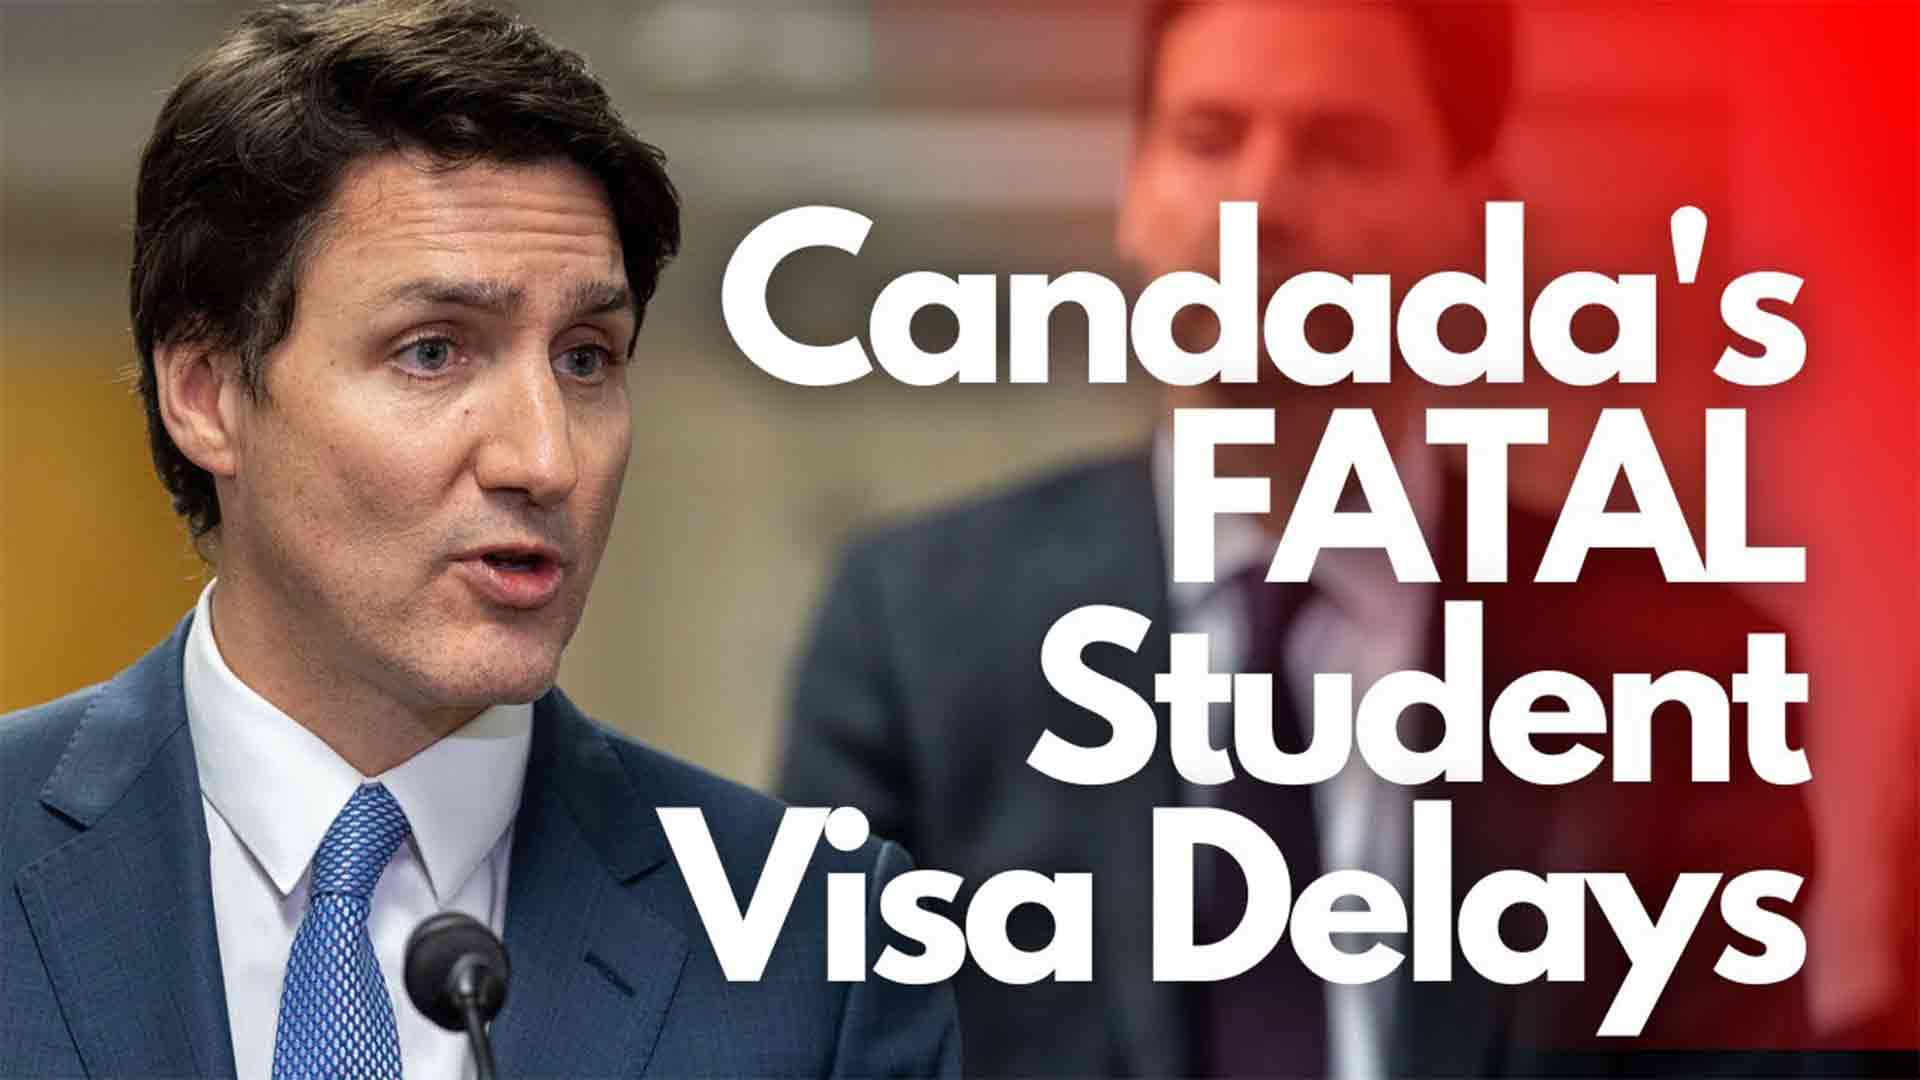 Canadas FATAL Student Visa Delays Visa delays international students in Canada